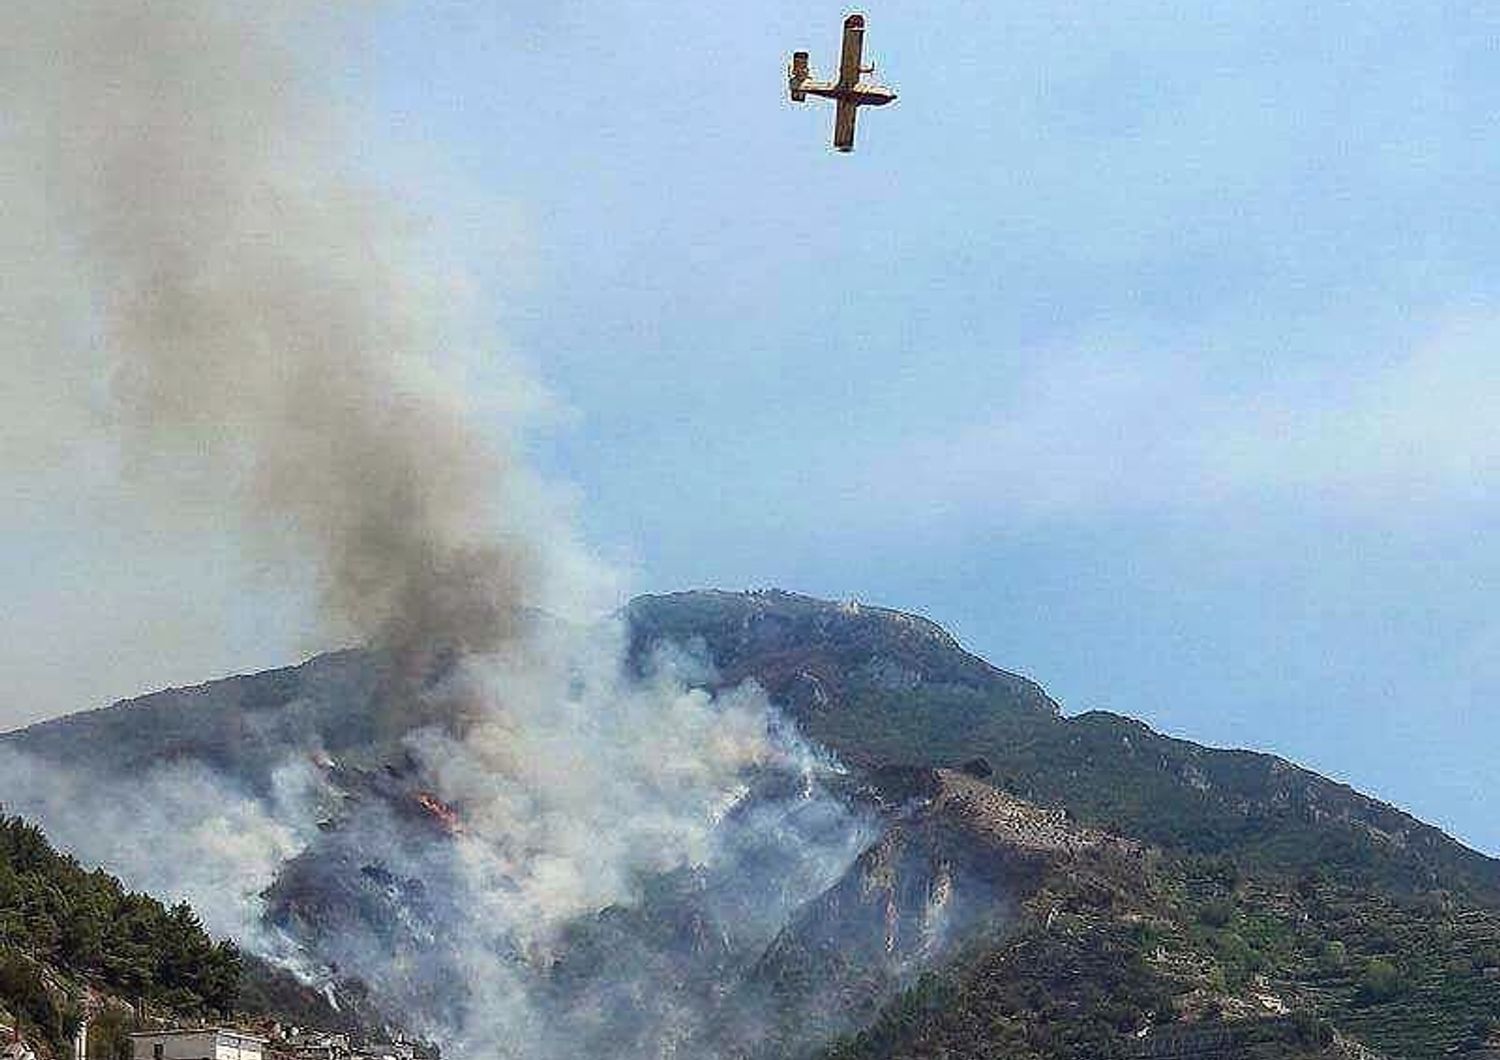 Incendio sulle colline di Maiori in Costiera amalfitana